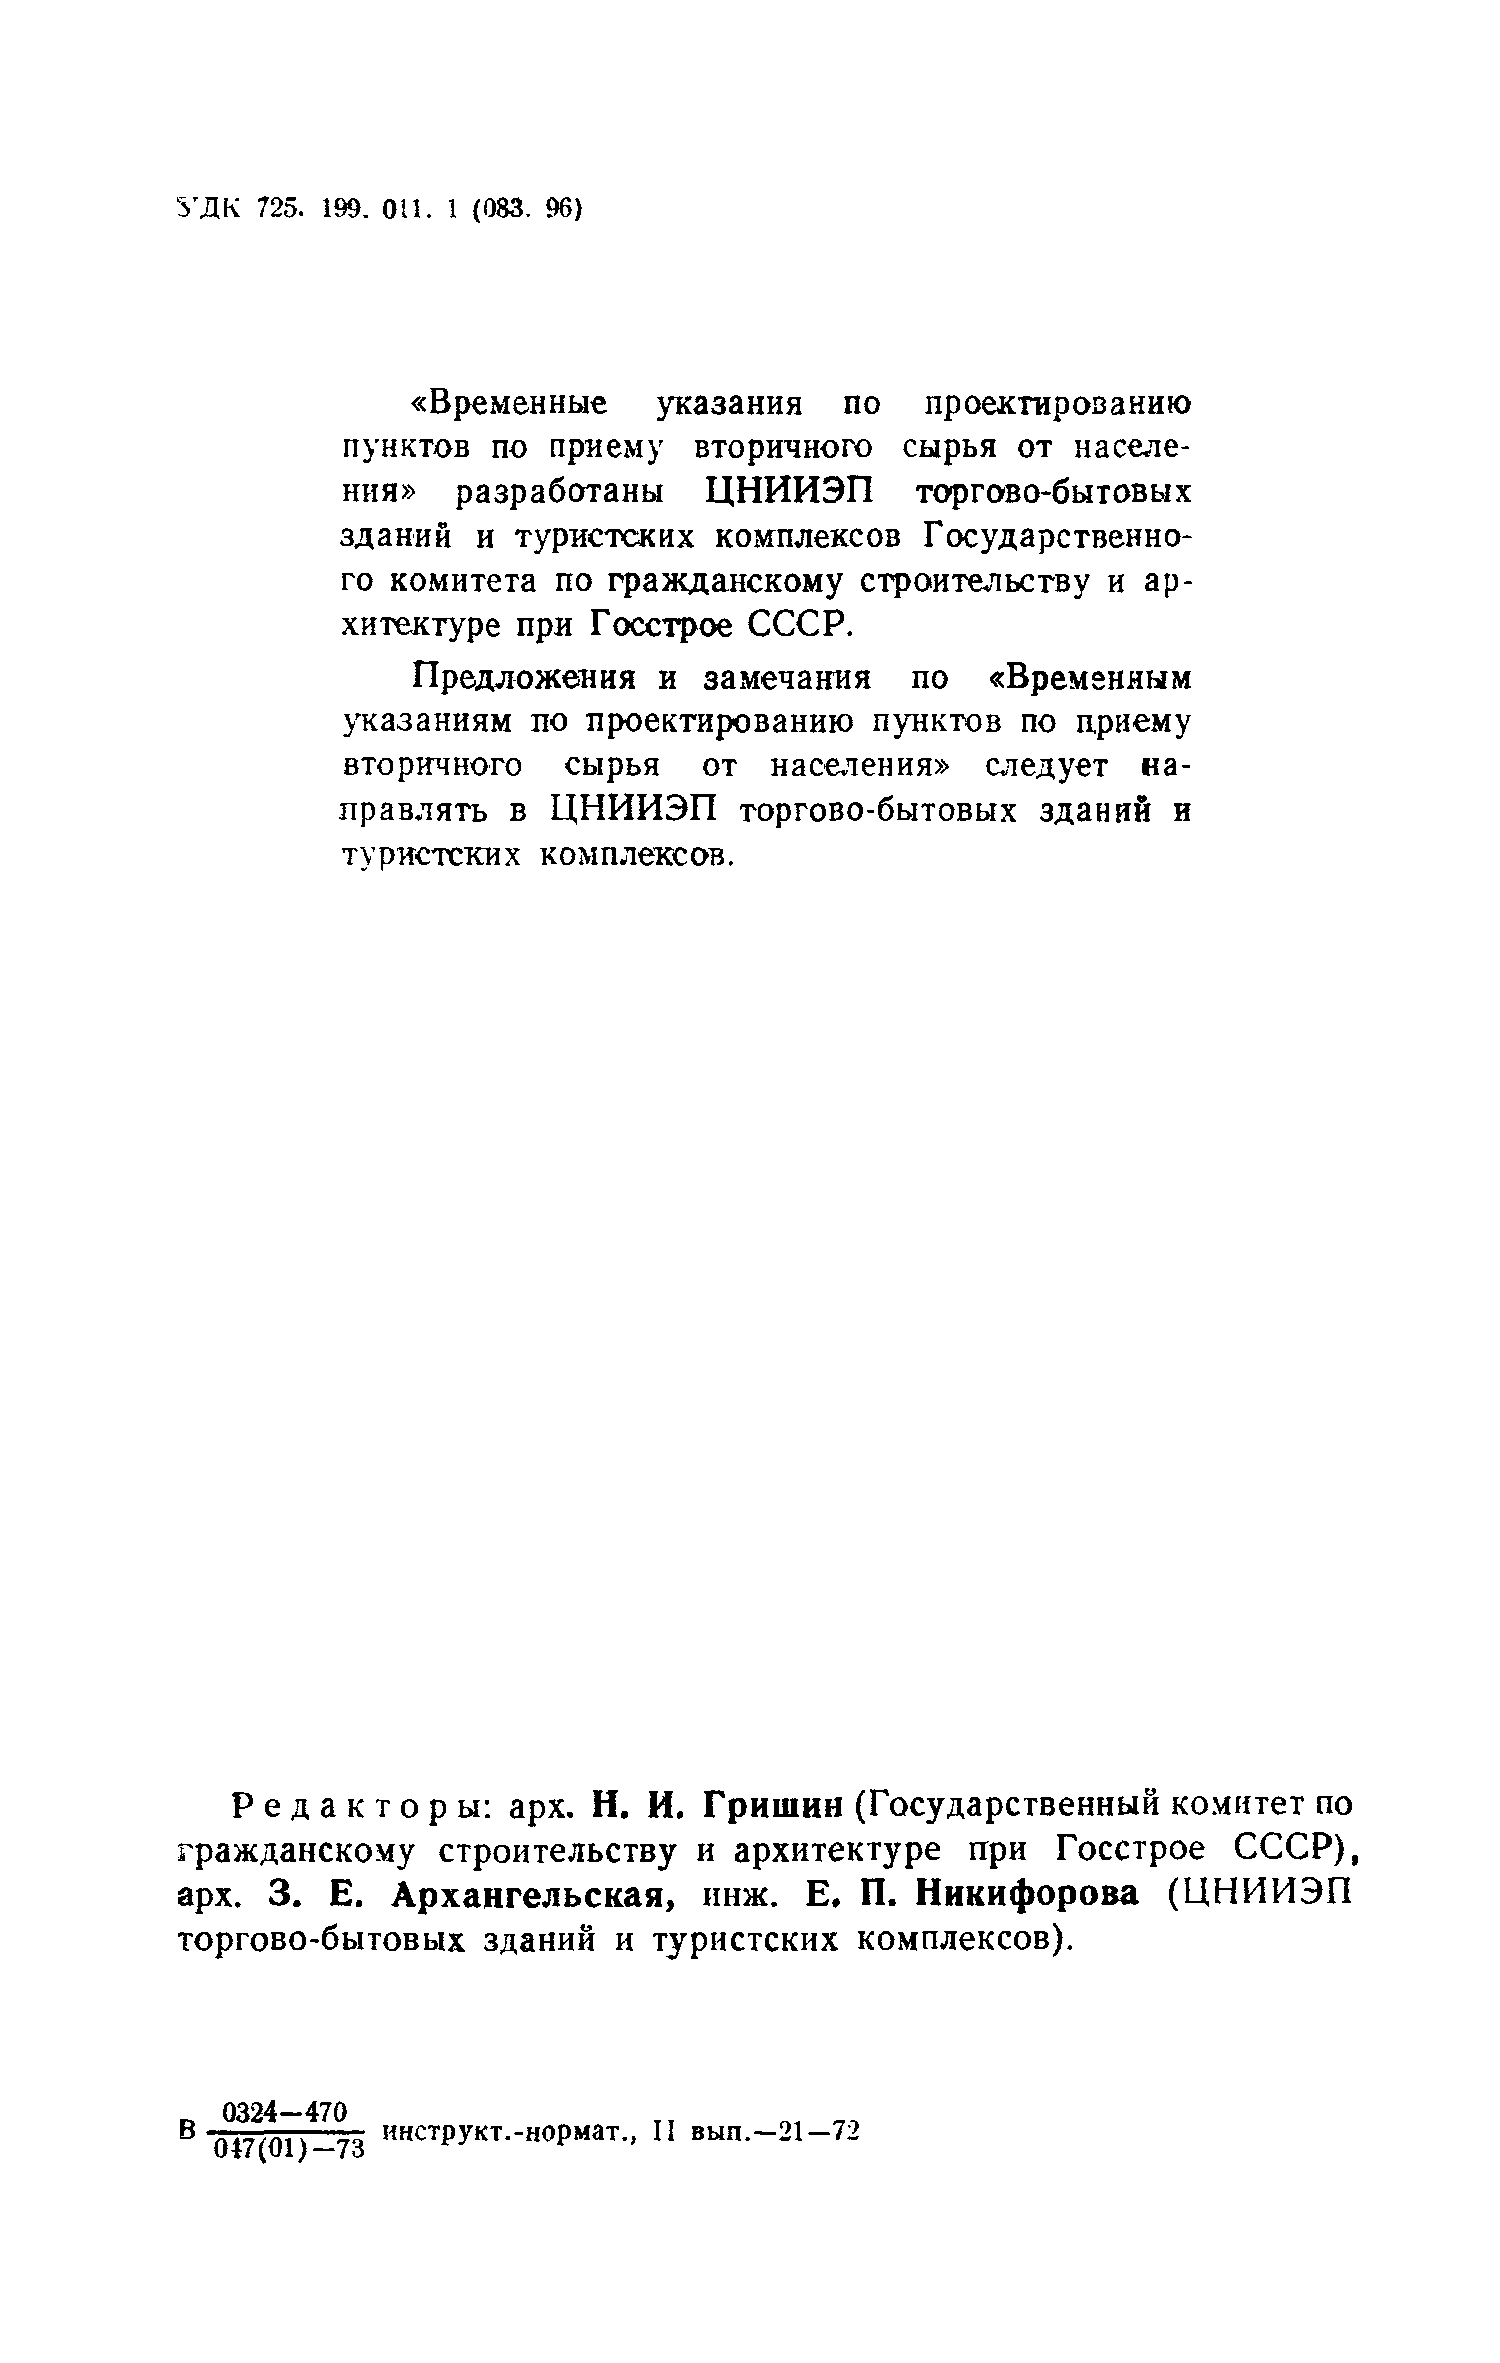 ВСН 7-71/Госгражданстрой